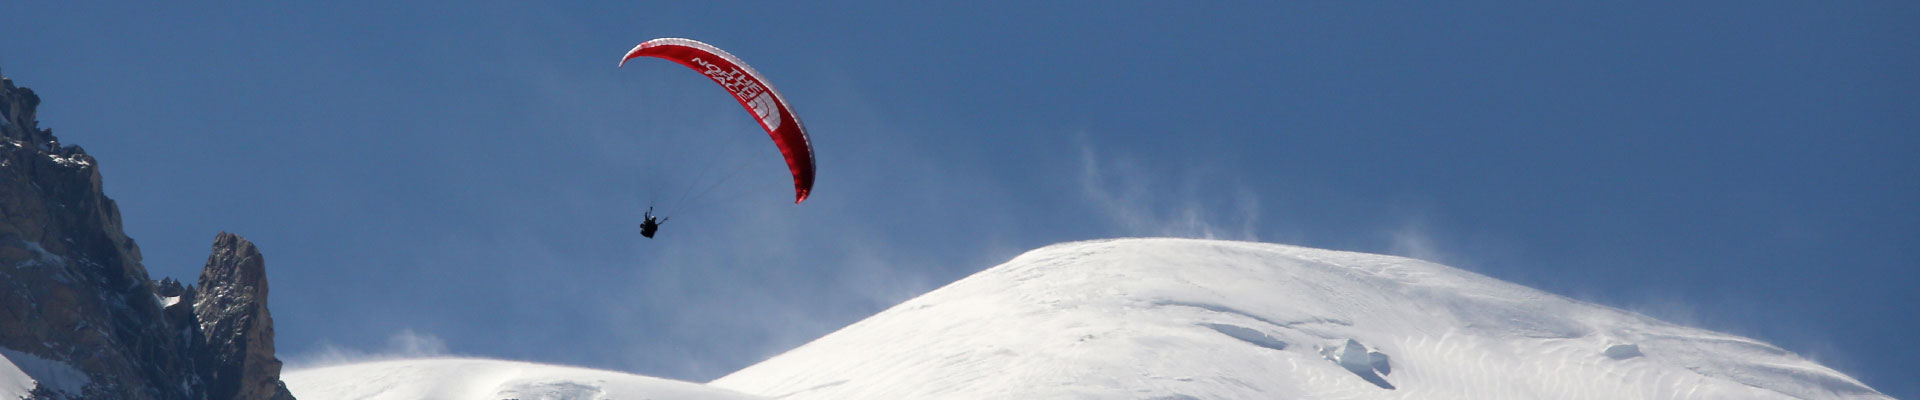 Qué tal si probáis vuestro primer vuelo acrobático en Chamonix?